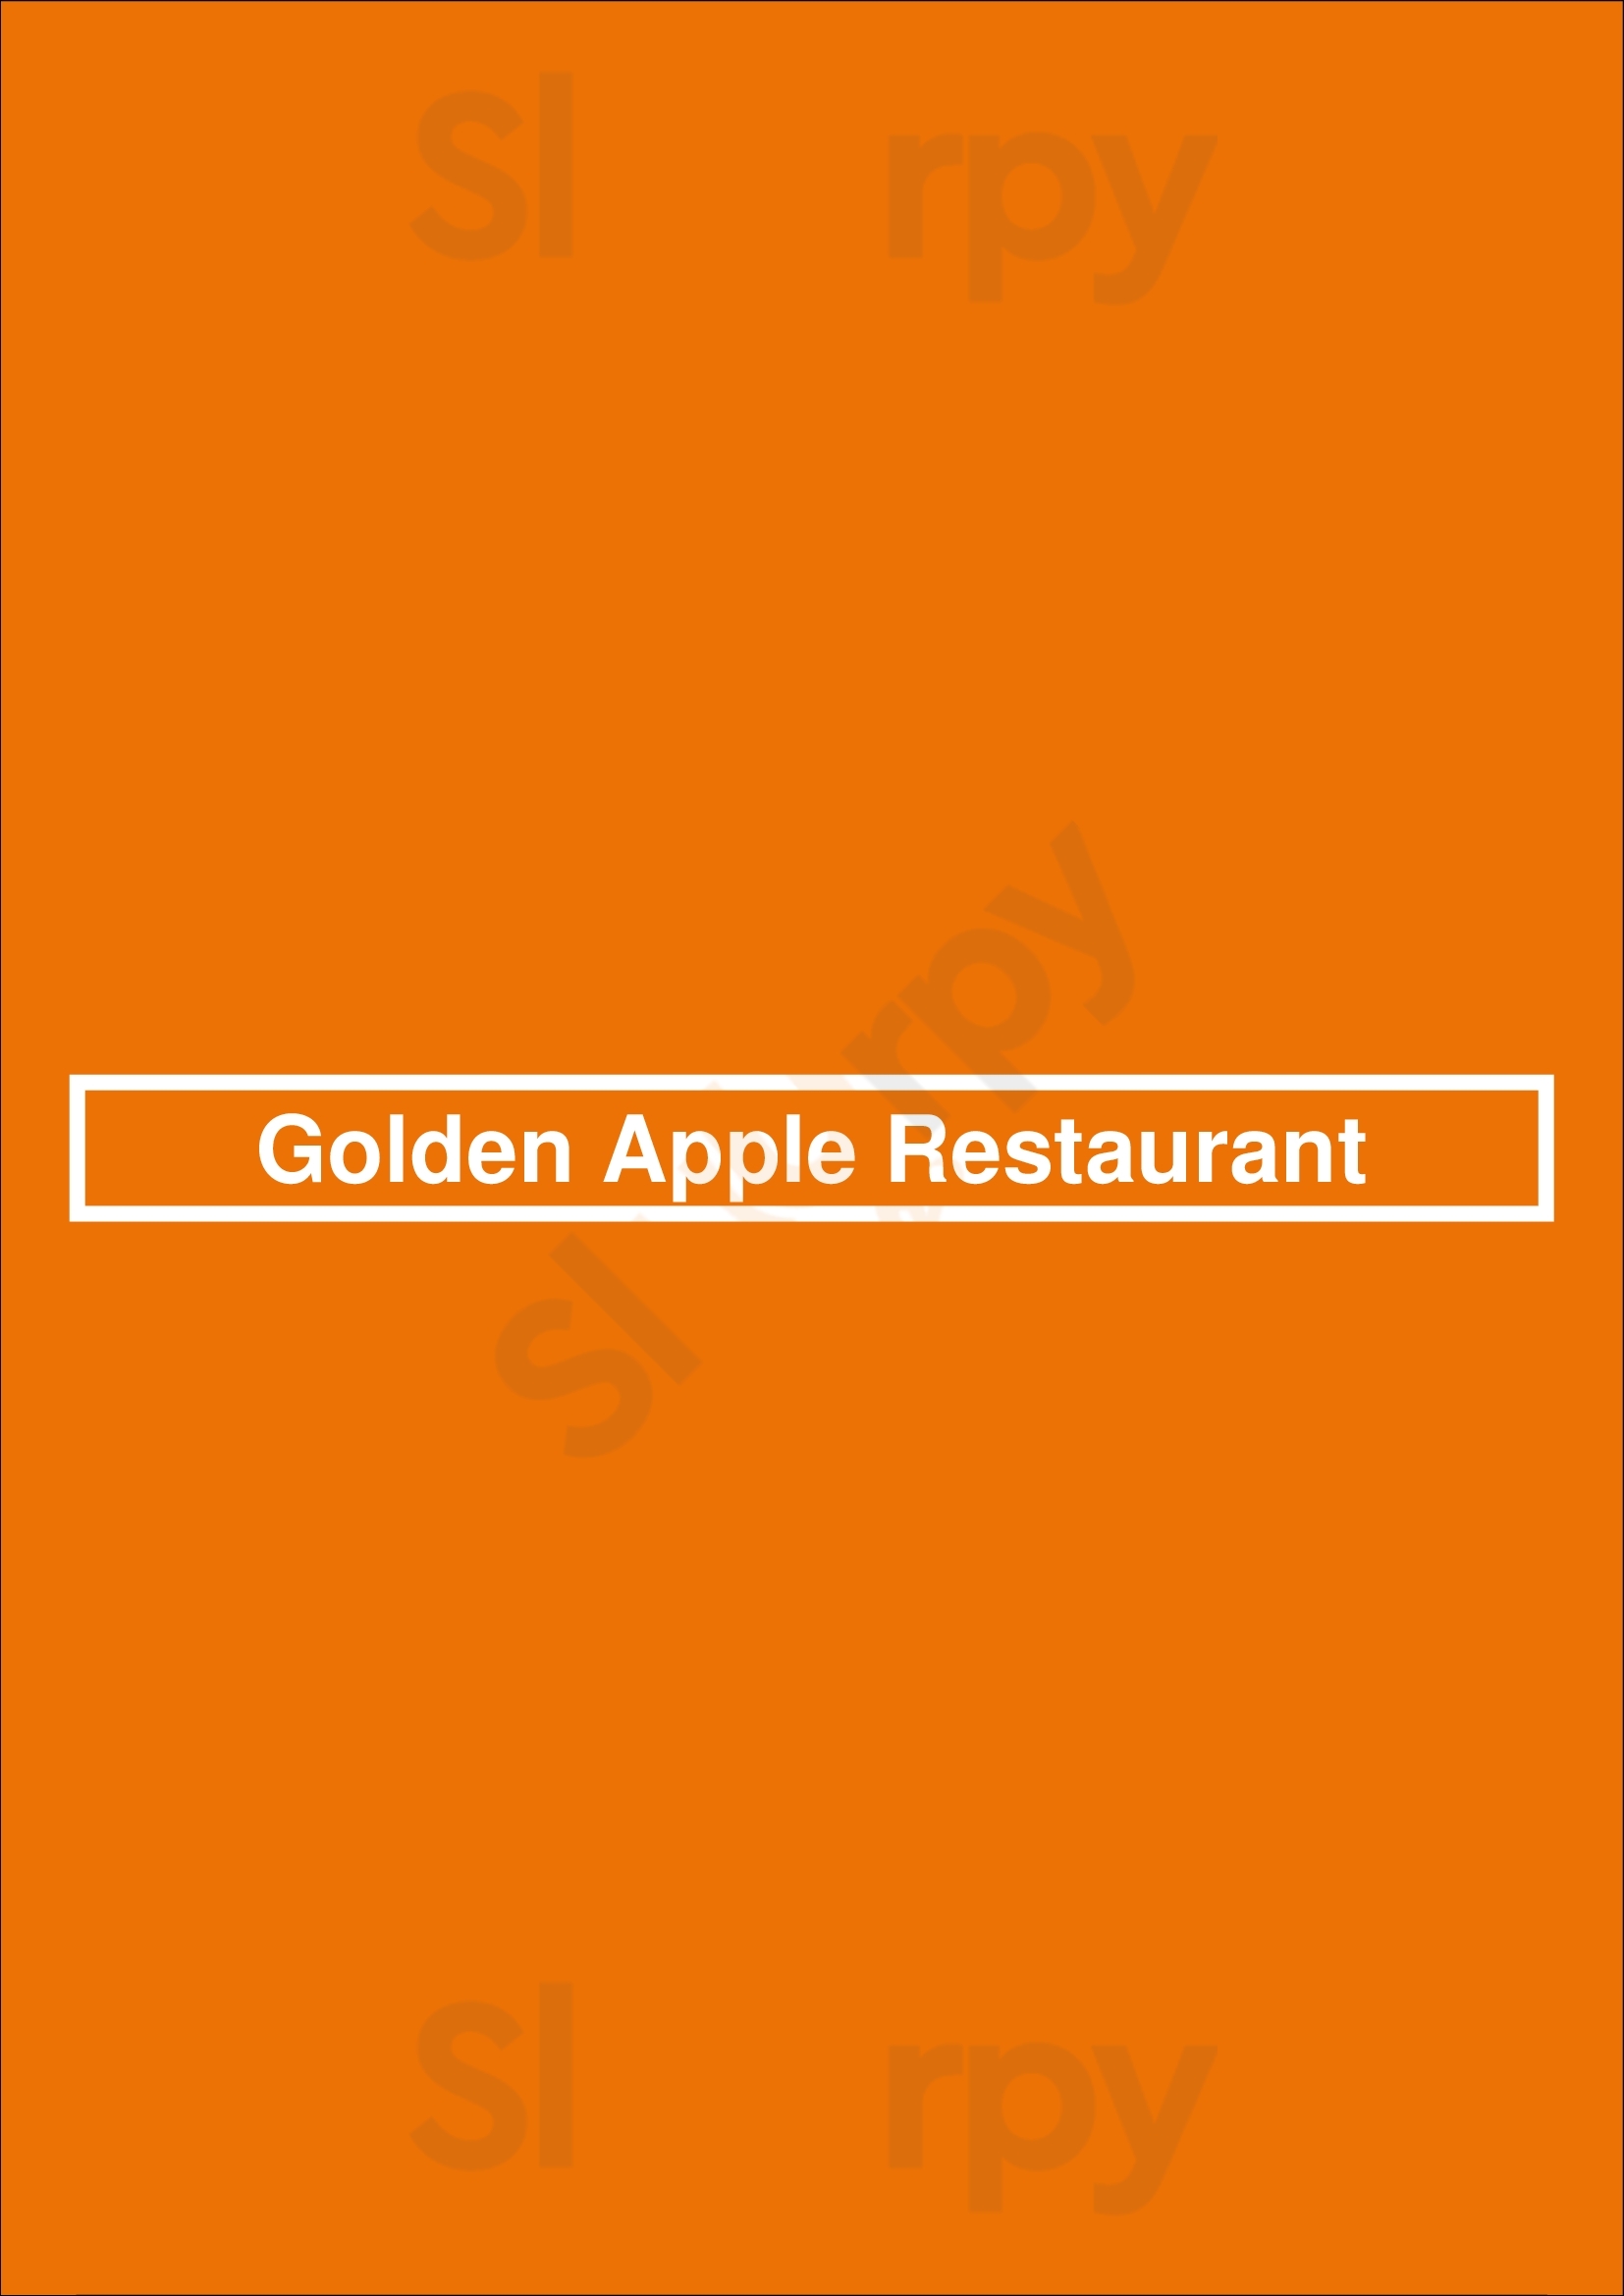 Golden Apple Restaurant Chicago Menu - 1